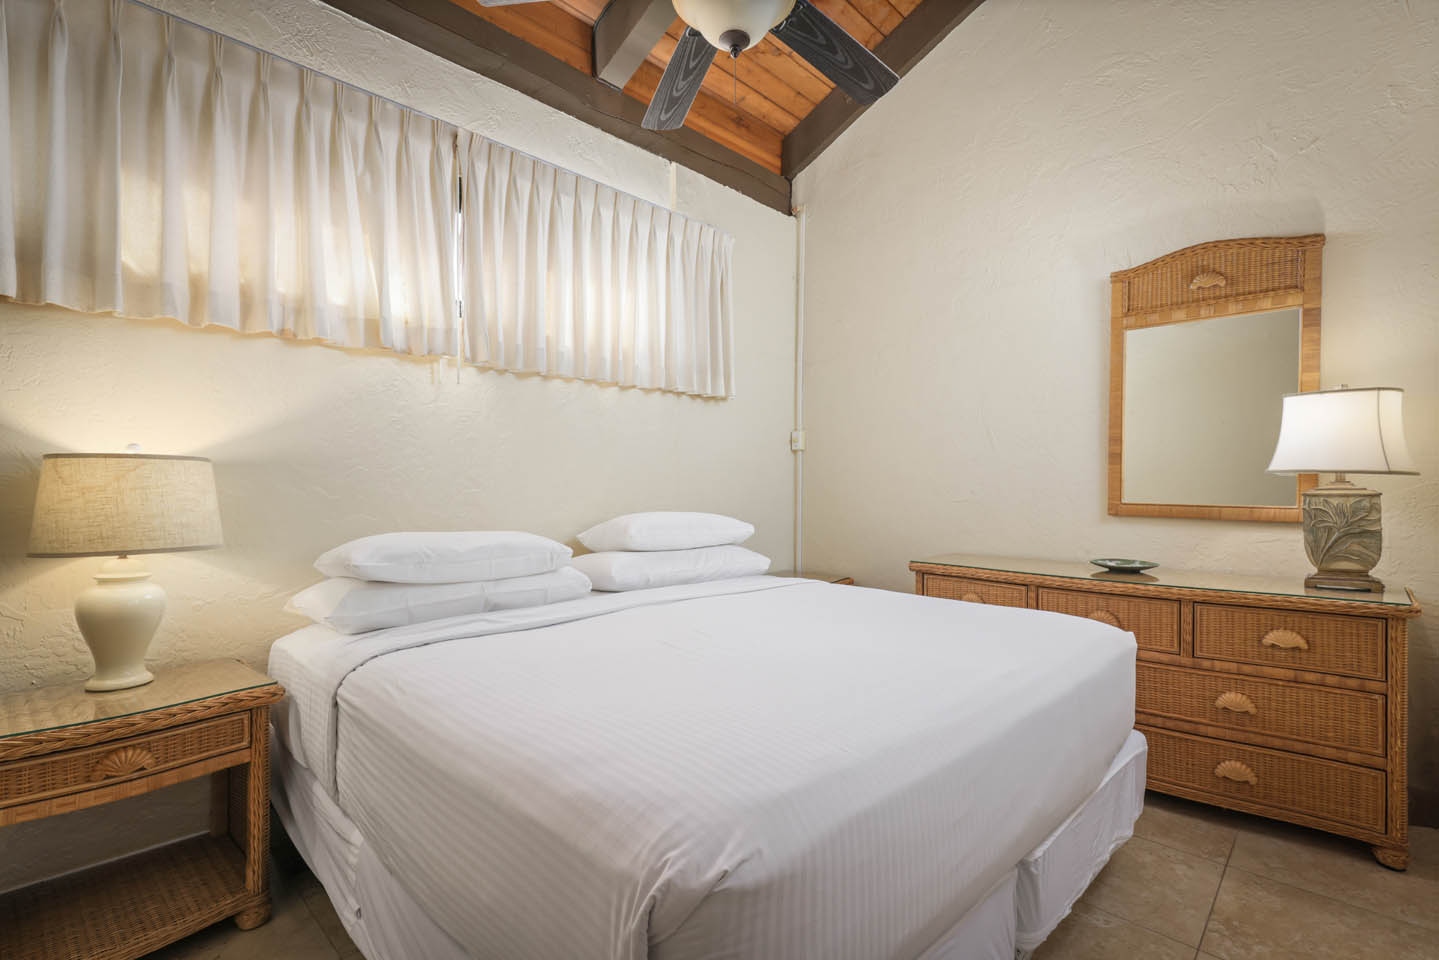 2-Bedroom Oceanfront Bedroom with bed, nightstand and lighting